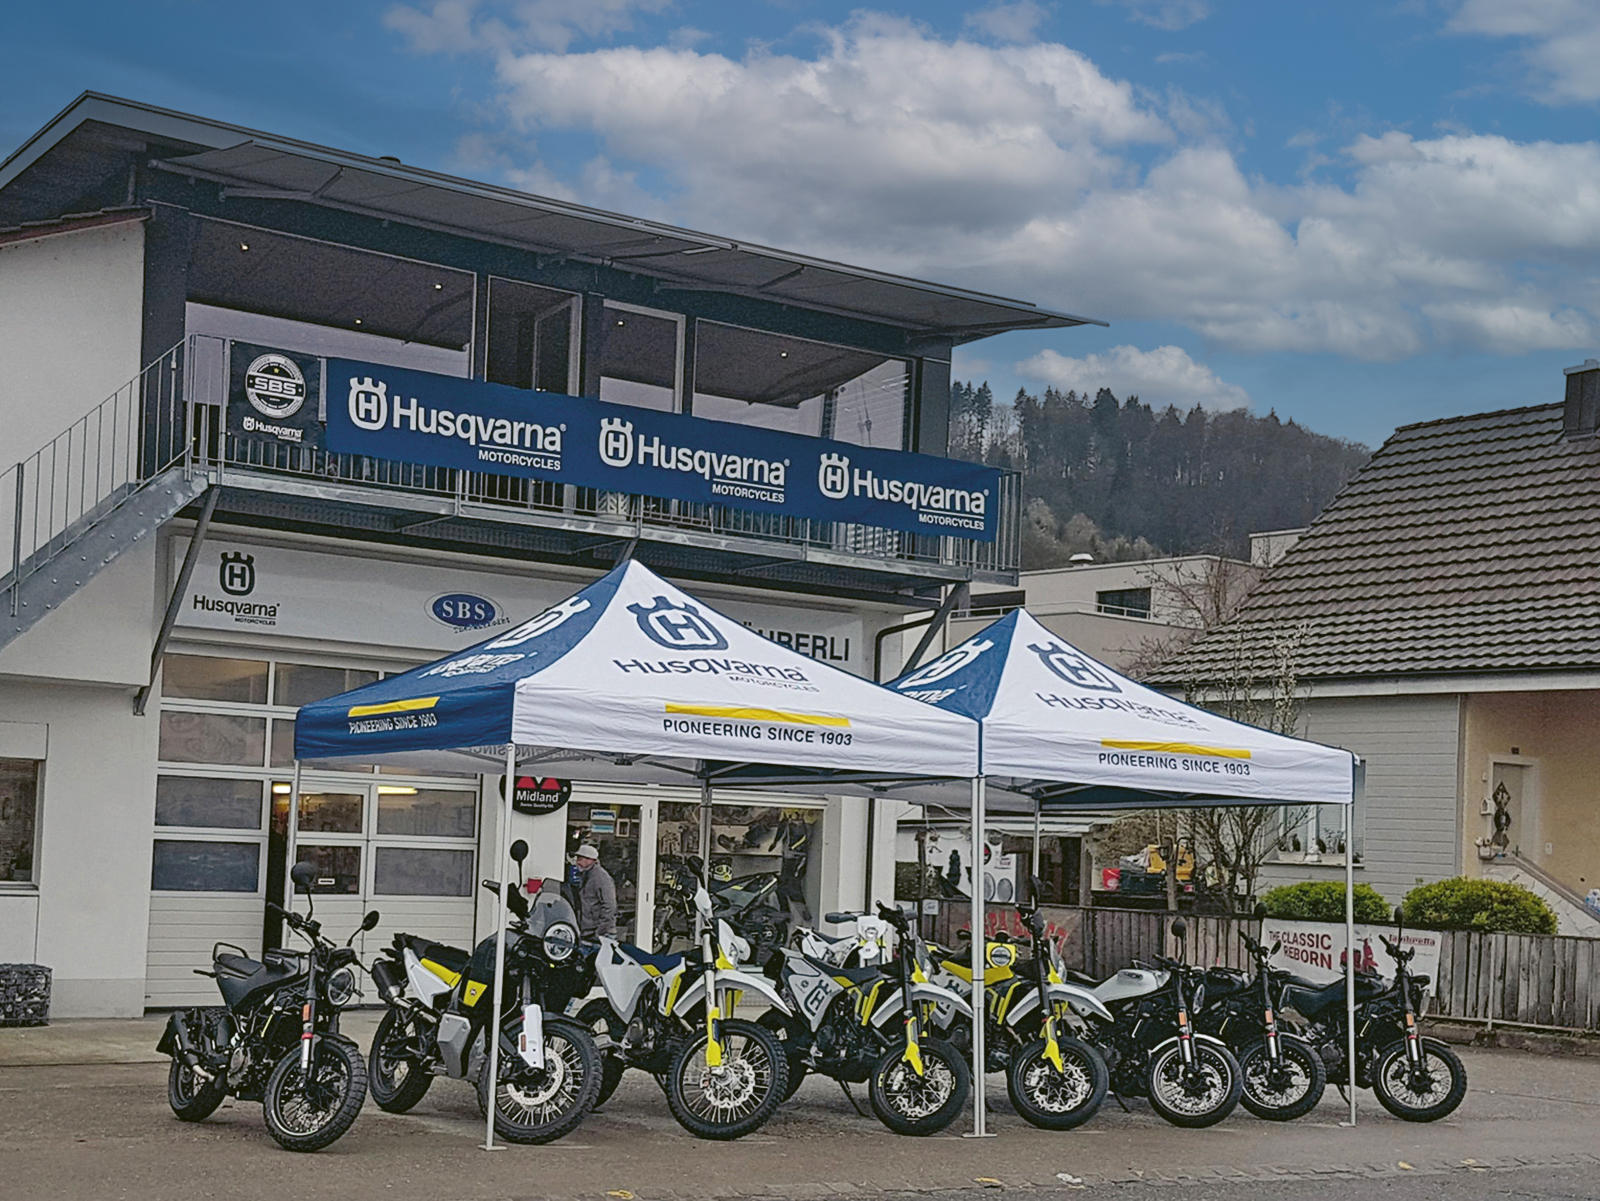 Vor dem Husqvarna Motorradgeschäft in Thurgi. Verschiedene Husqvarna-Modelle ausgestellt.